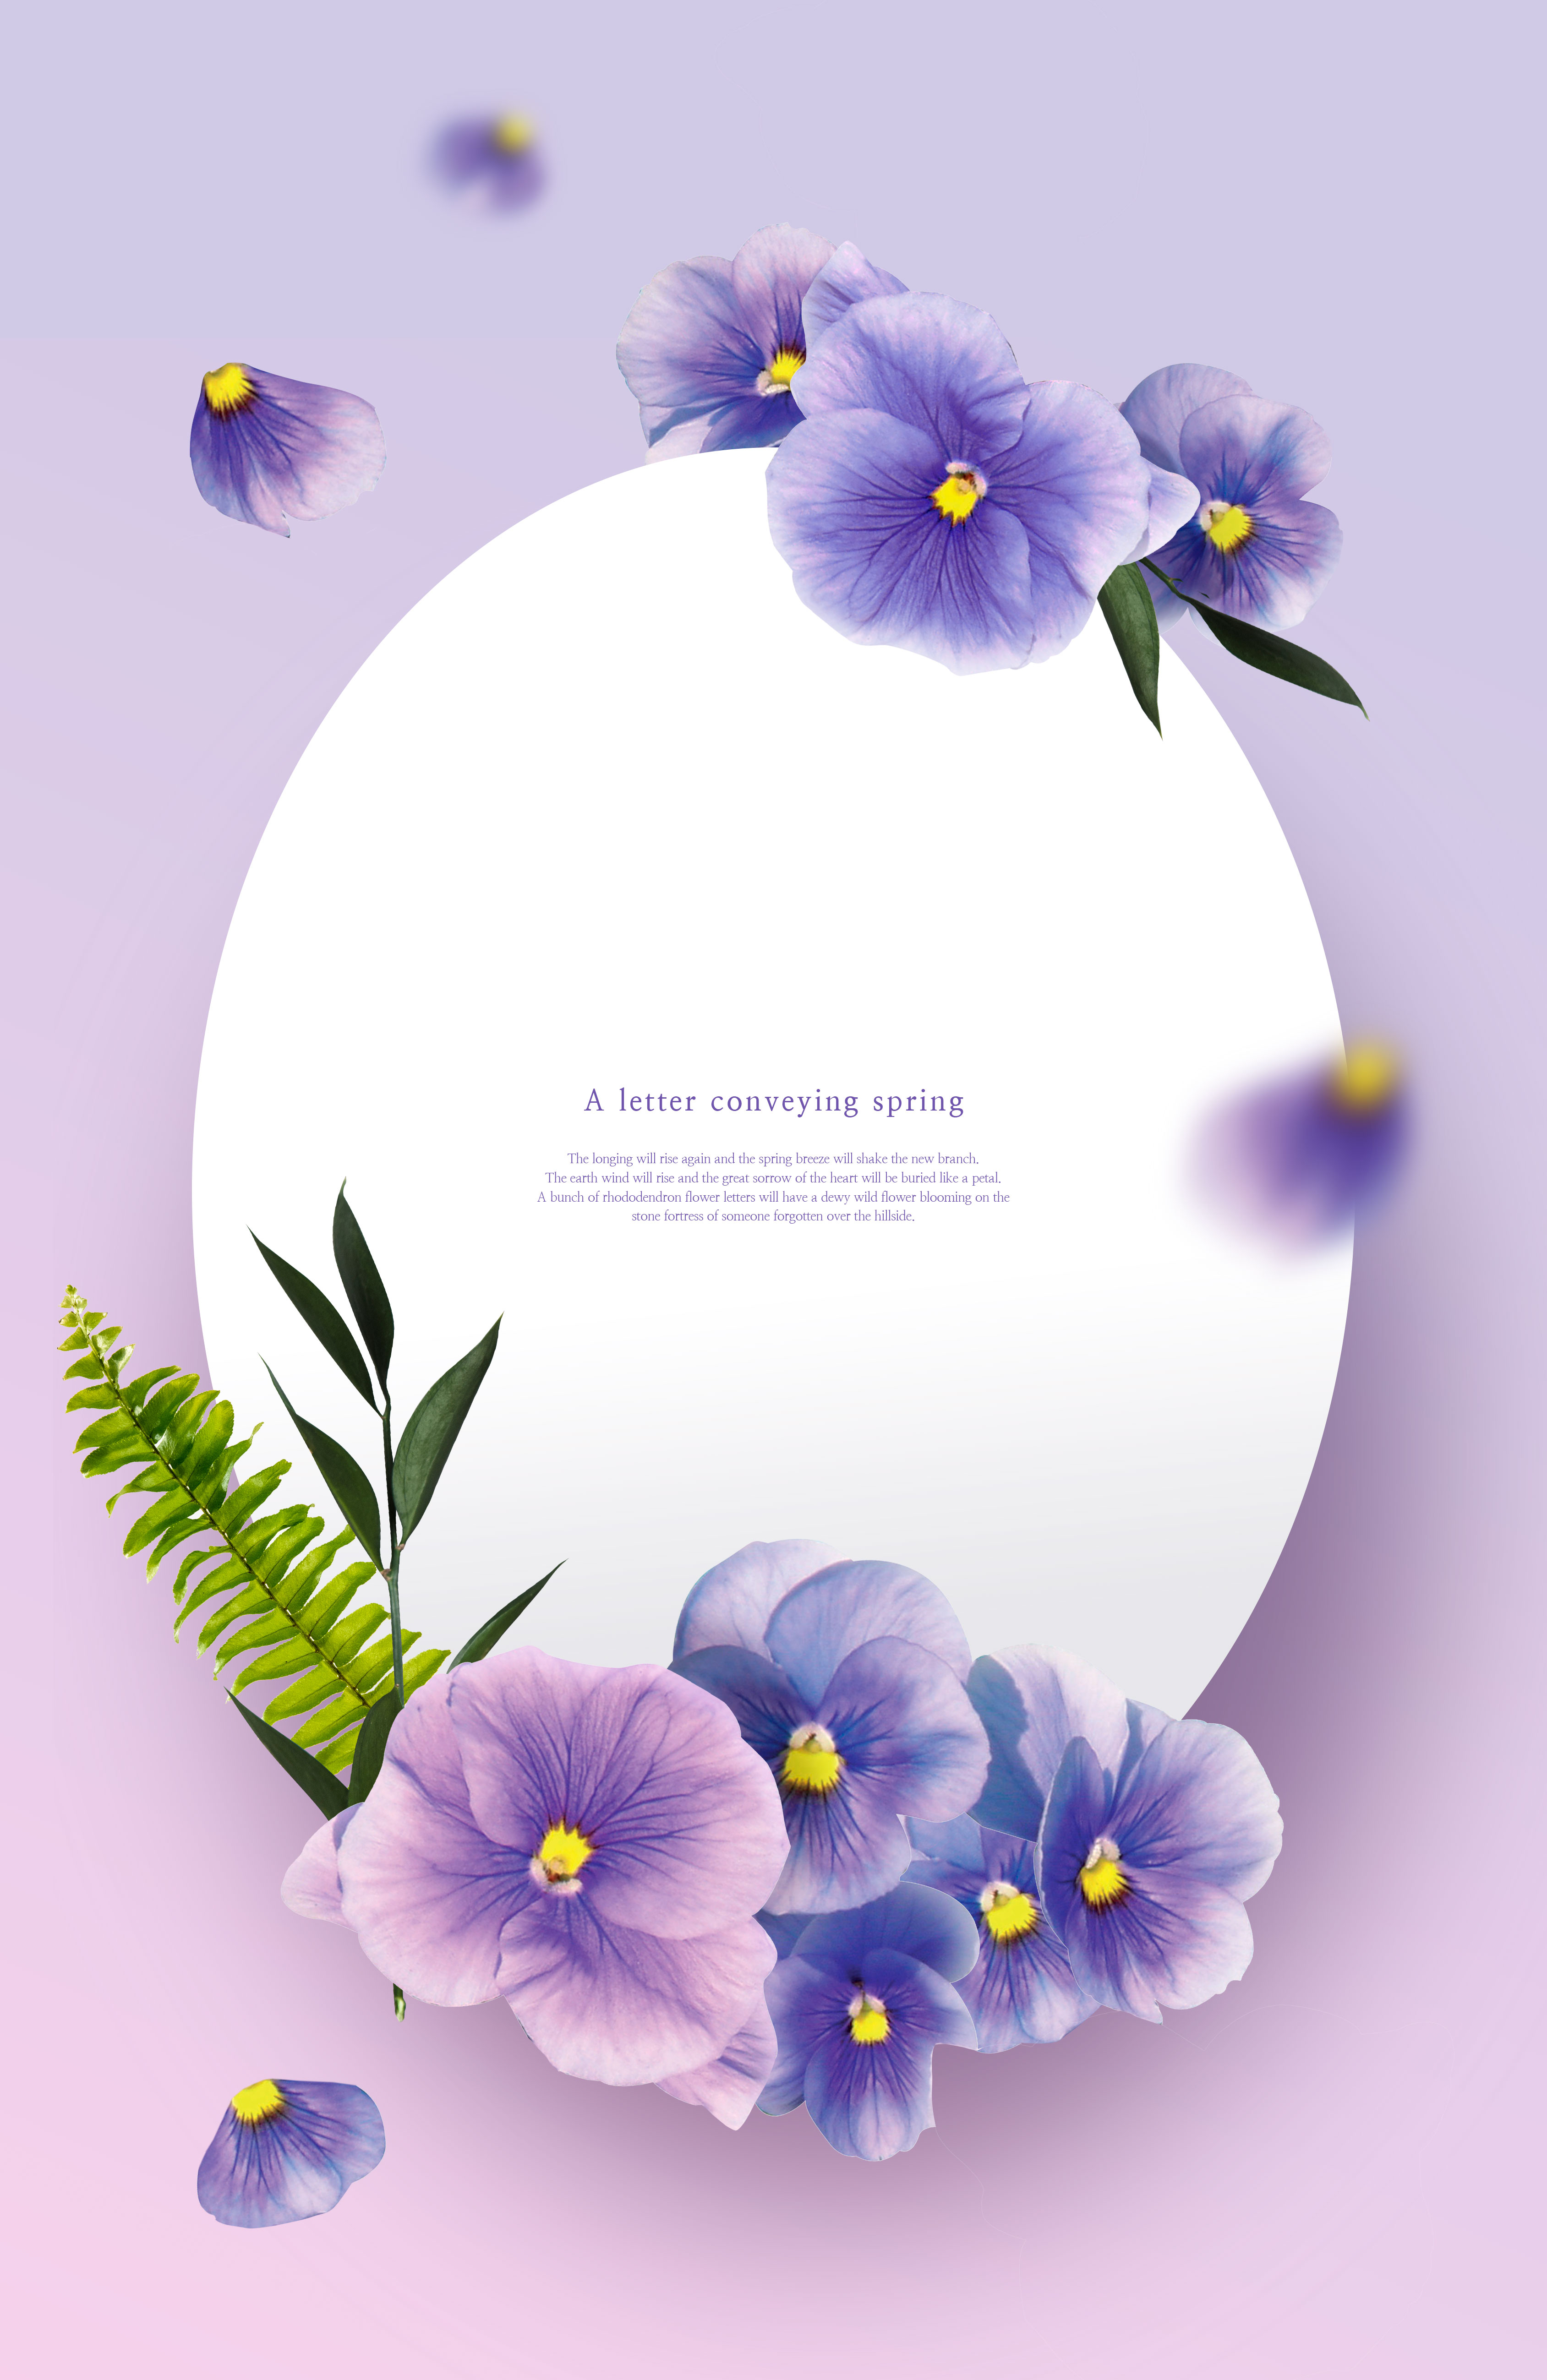 紫色三色堇-春天花卉主题海报/贺卡/信纸设计psd素材插图